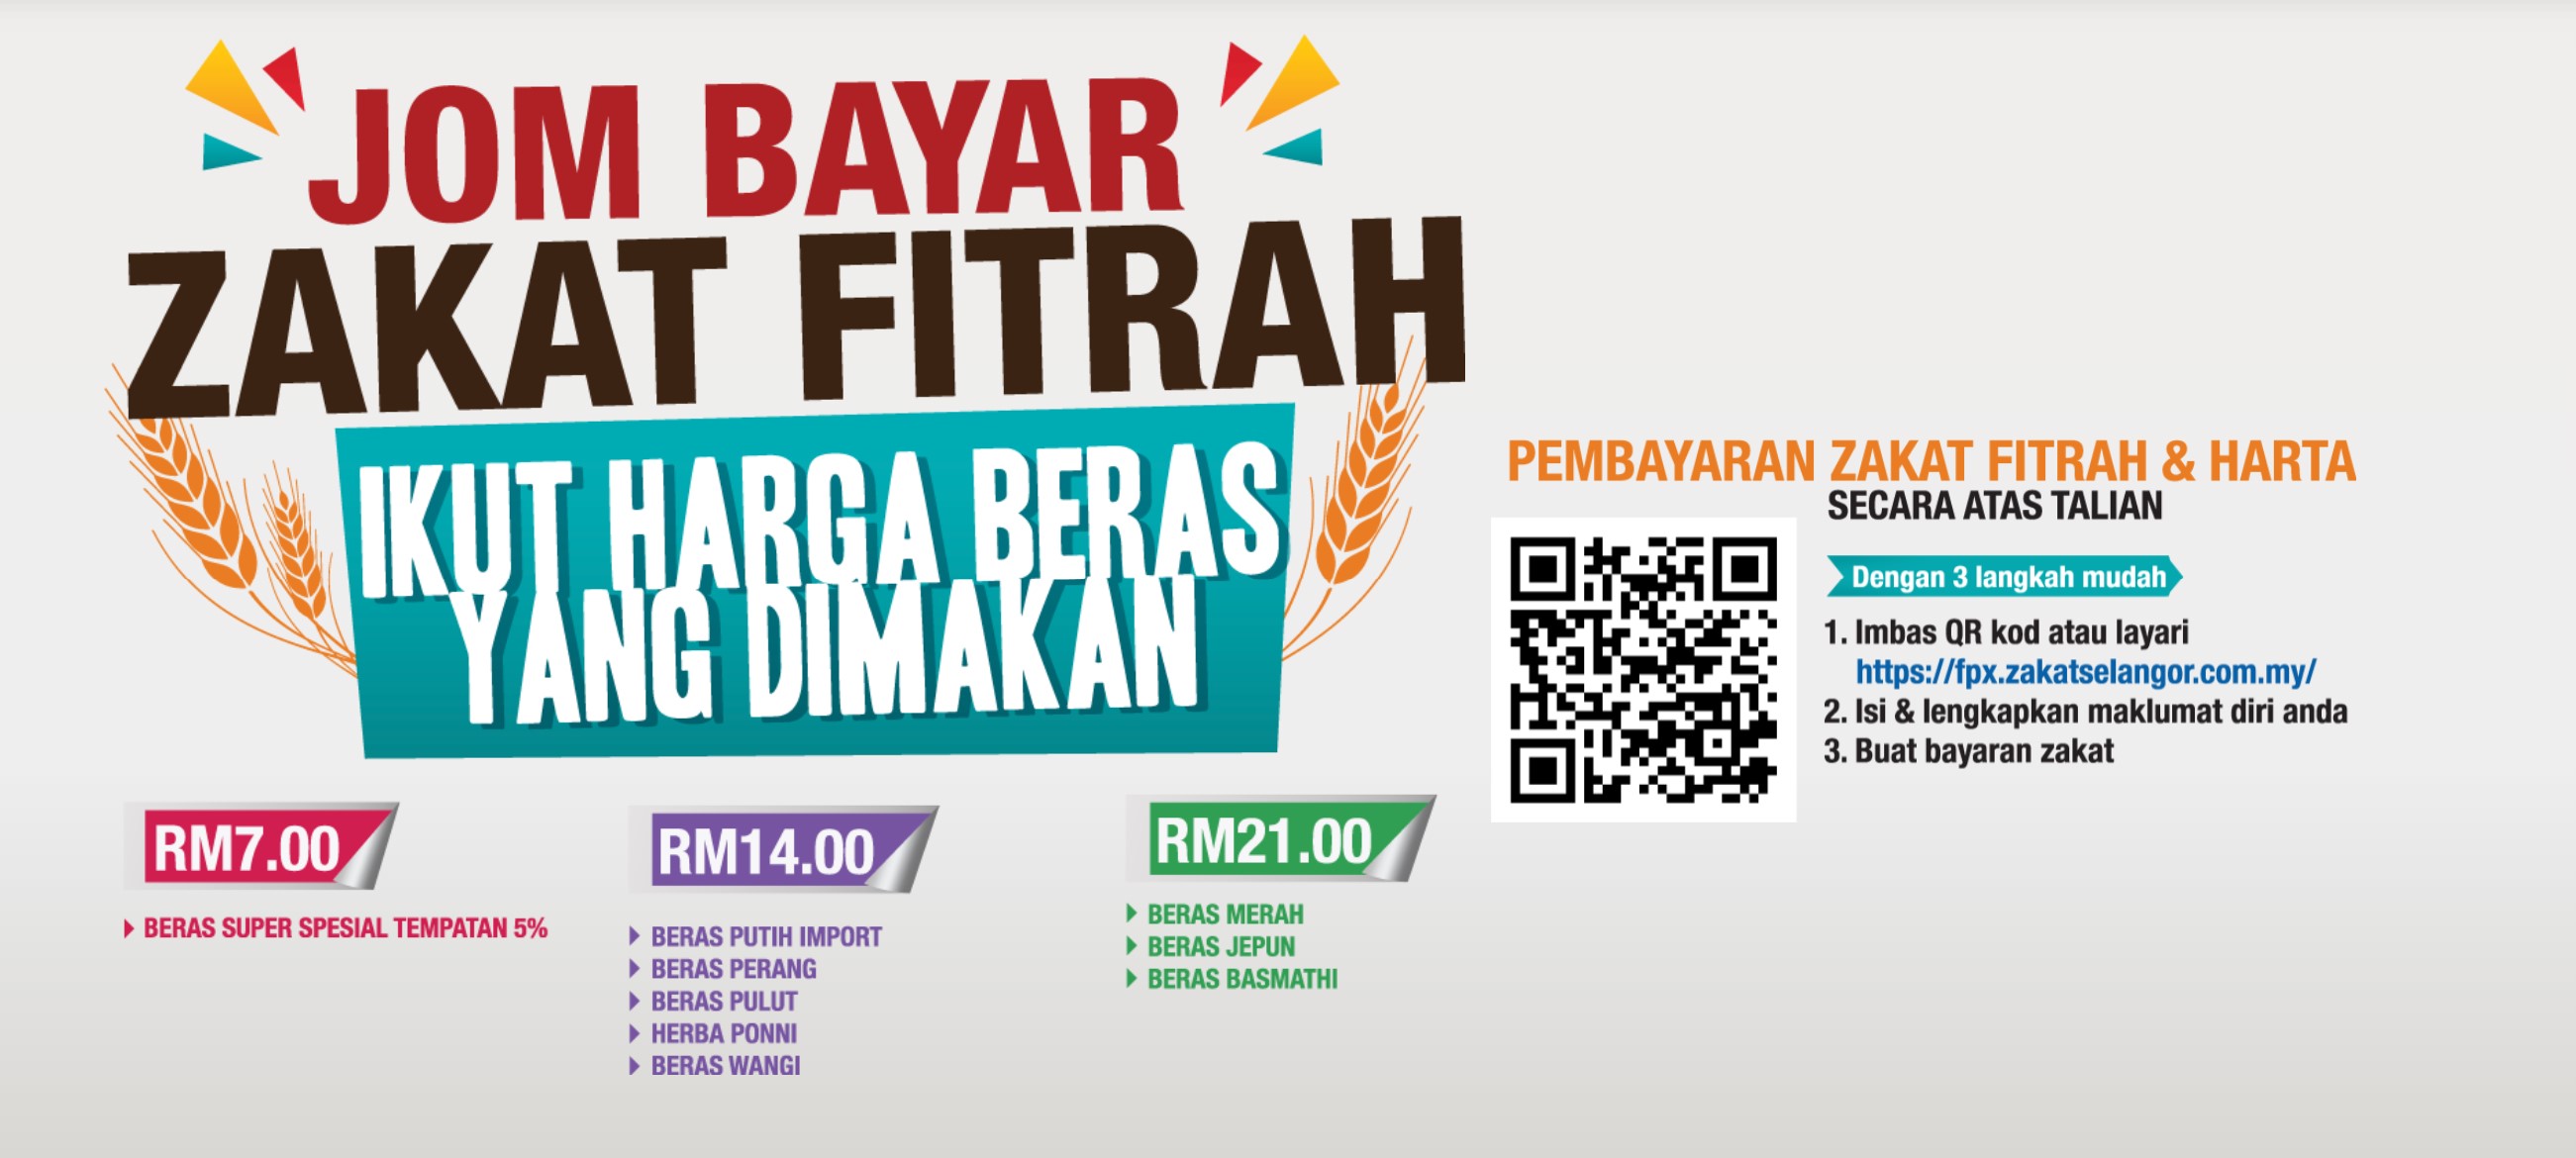 Promosi kempen bayar Zakat Fitrah Selangor 2021